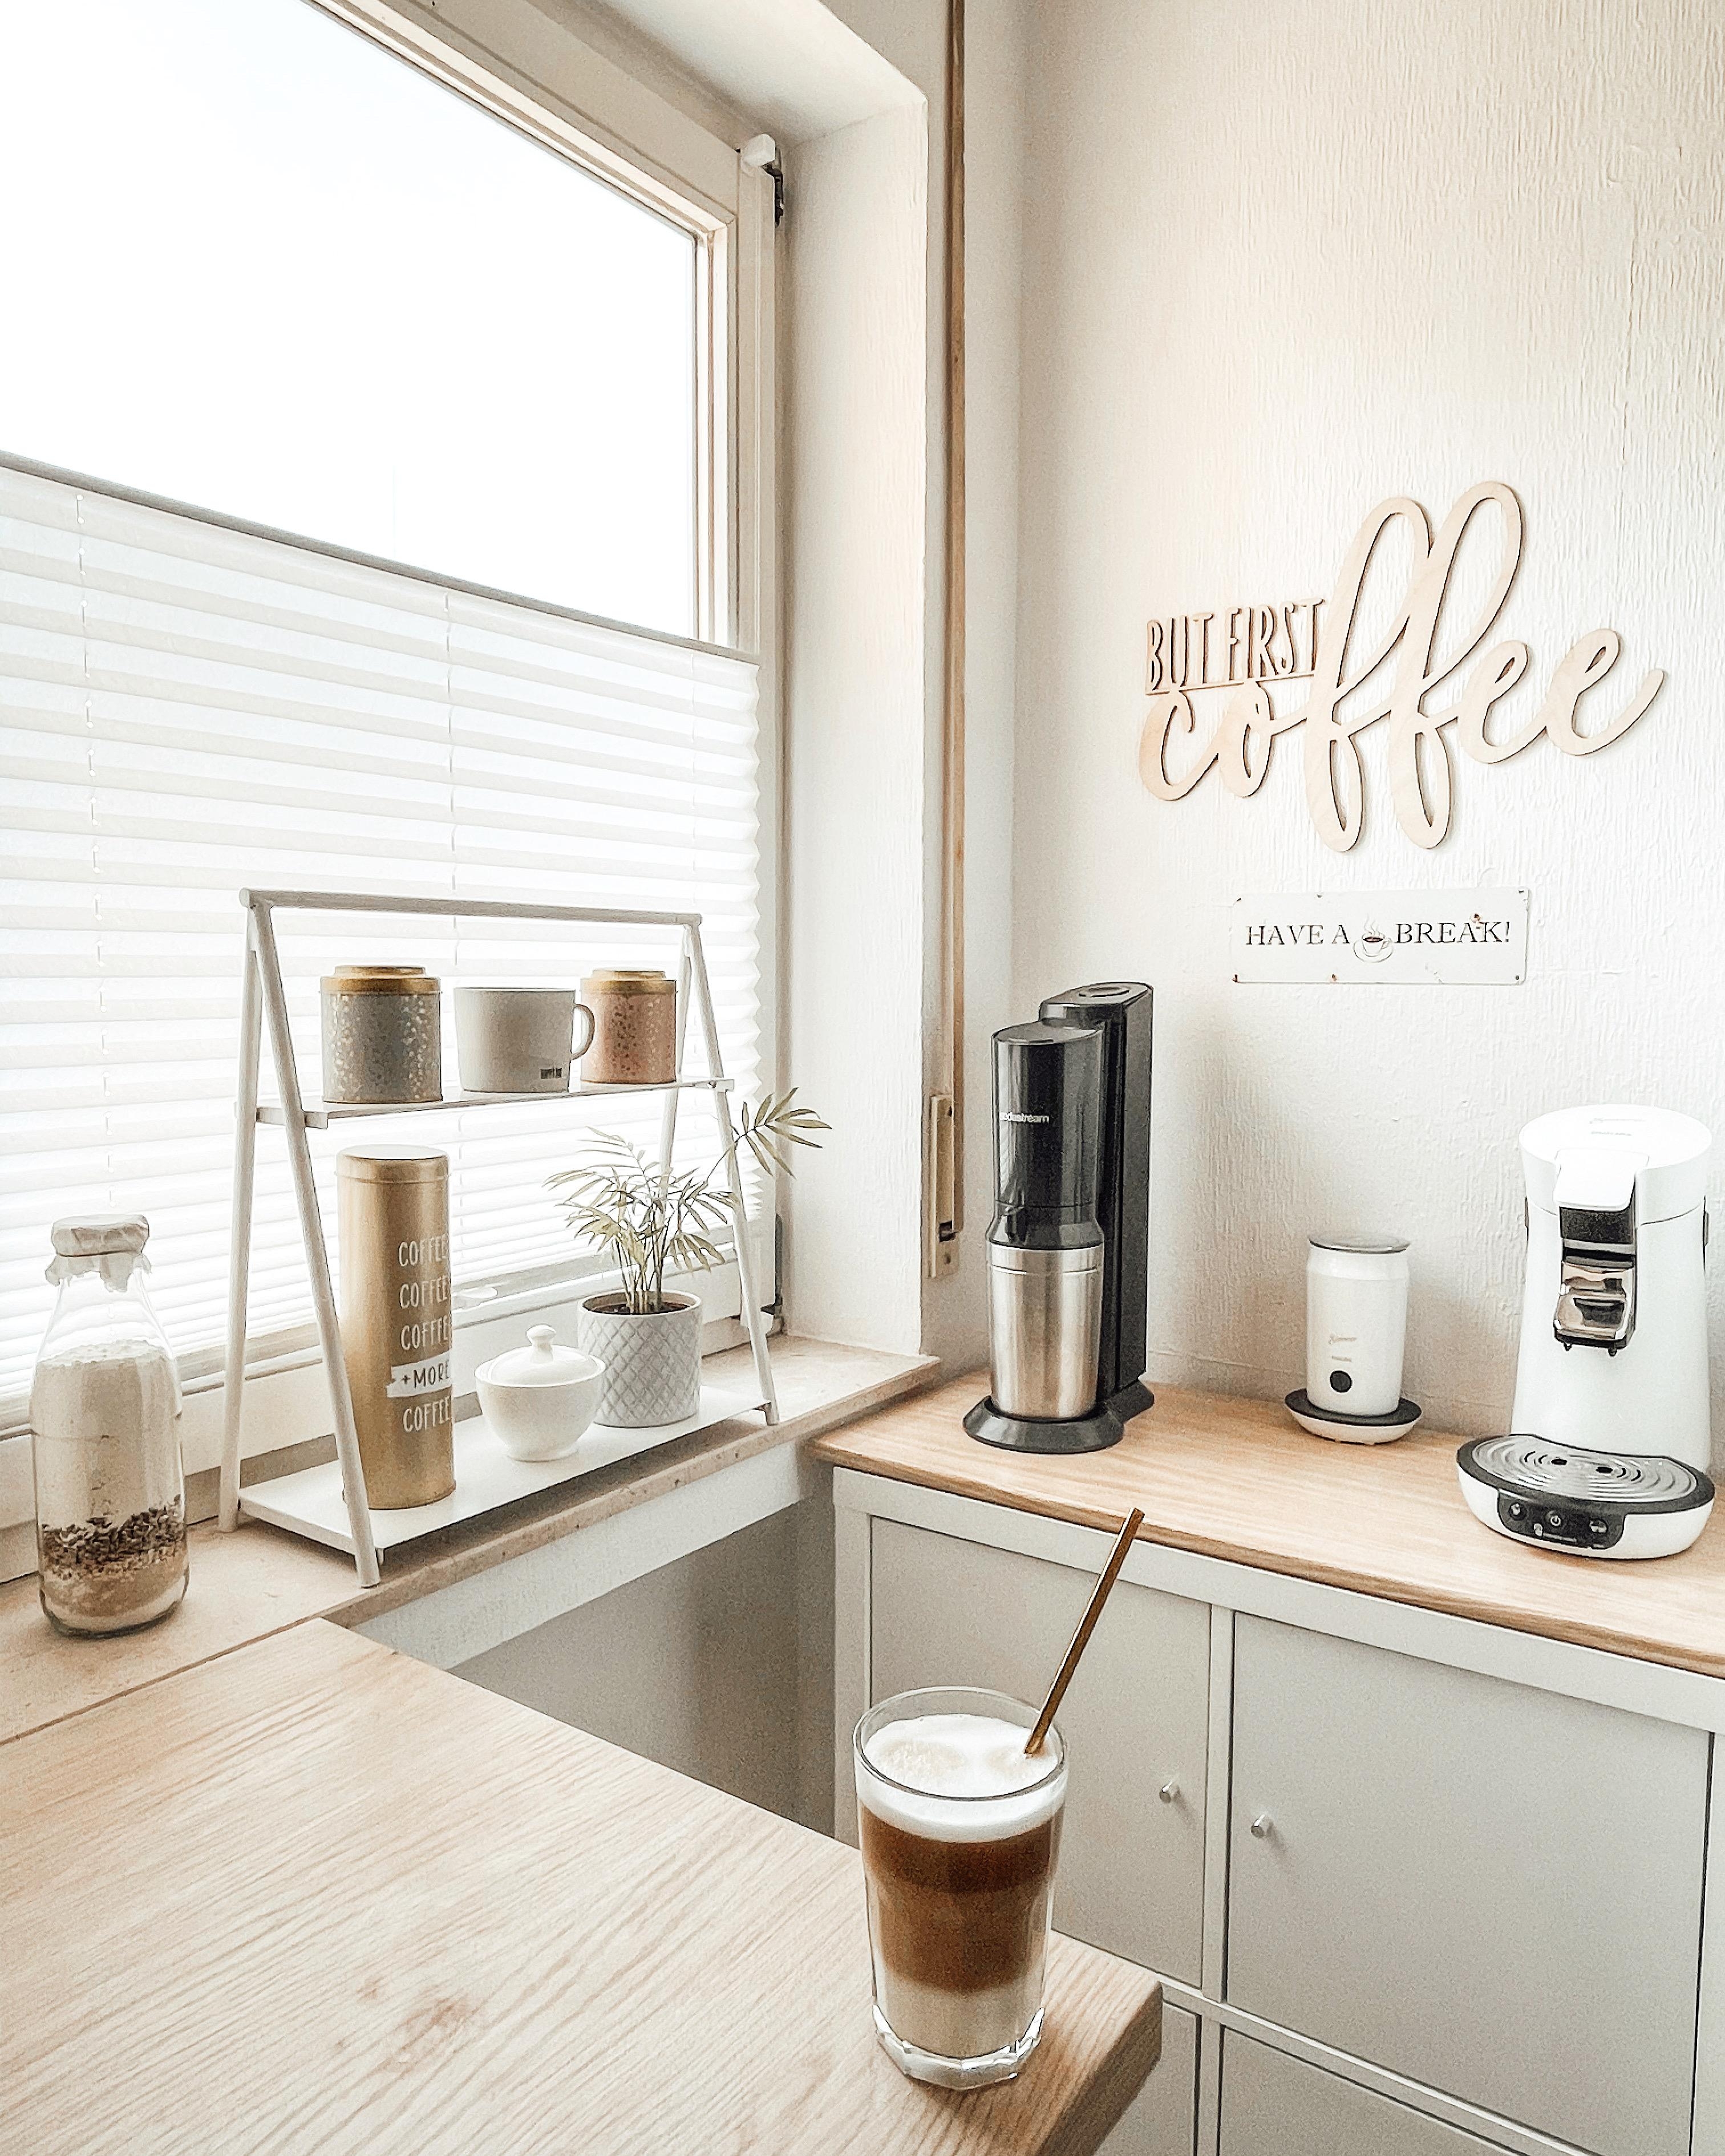 Kaffee am Morgen vertreibt Kummer und Sorgen ☕️ #kaffeelover #küchendesign #lieblingsecke #interior #butfirstcoffee